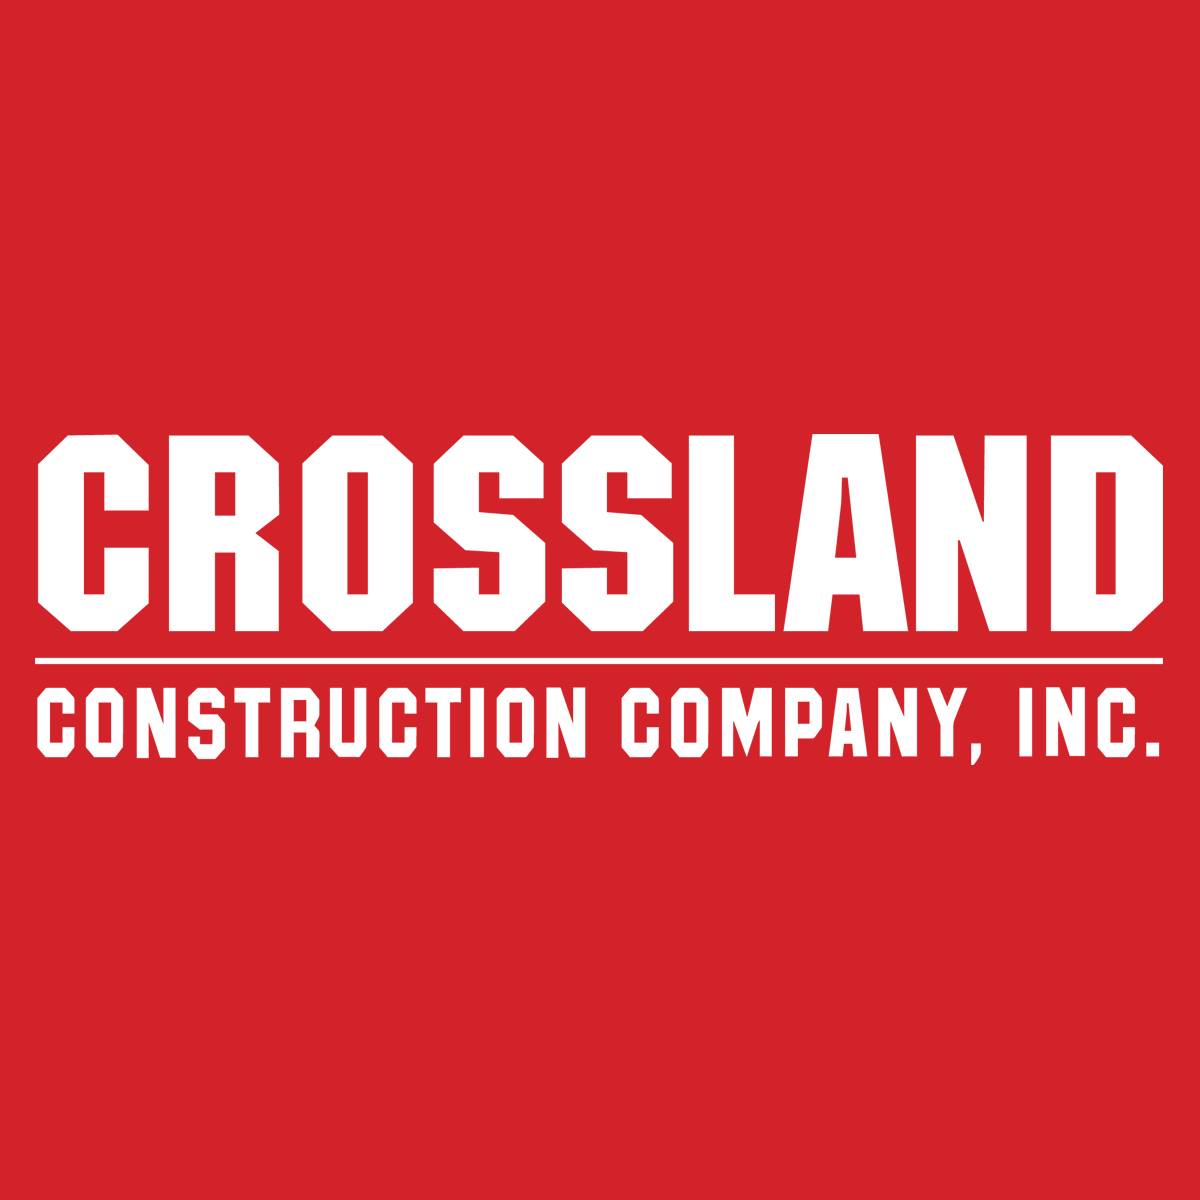 Company logo of Crossland Construction Company, Inc.